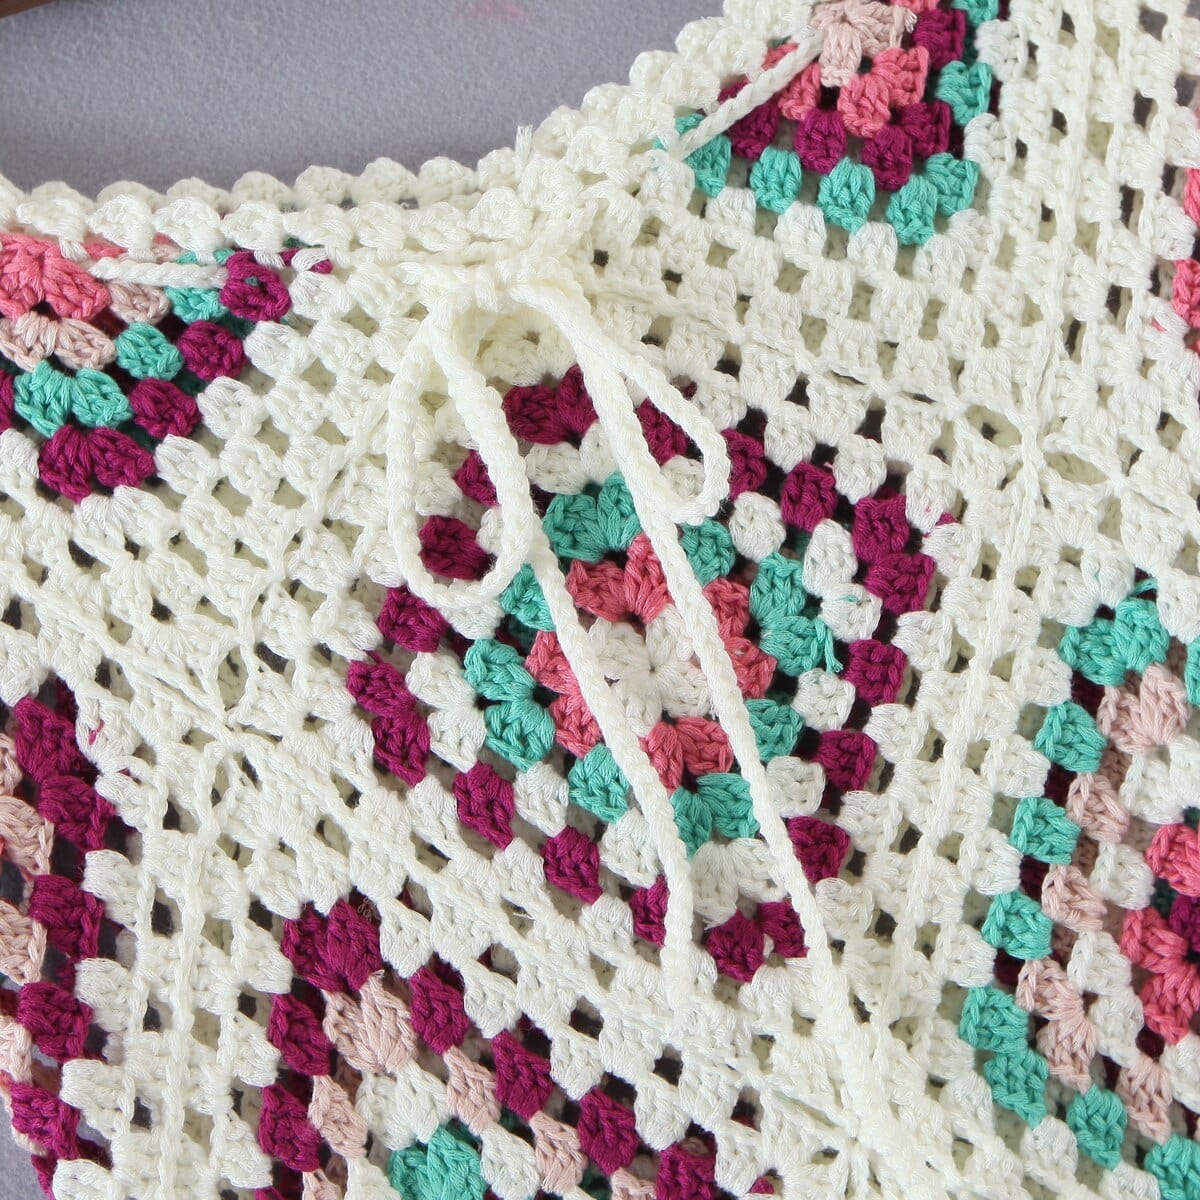 wickedafstore Harper Crochet Midi Skirt